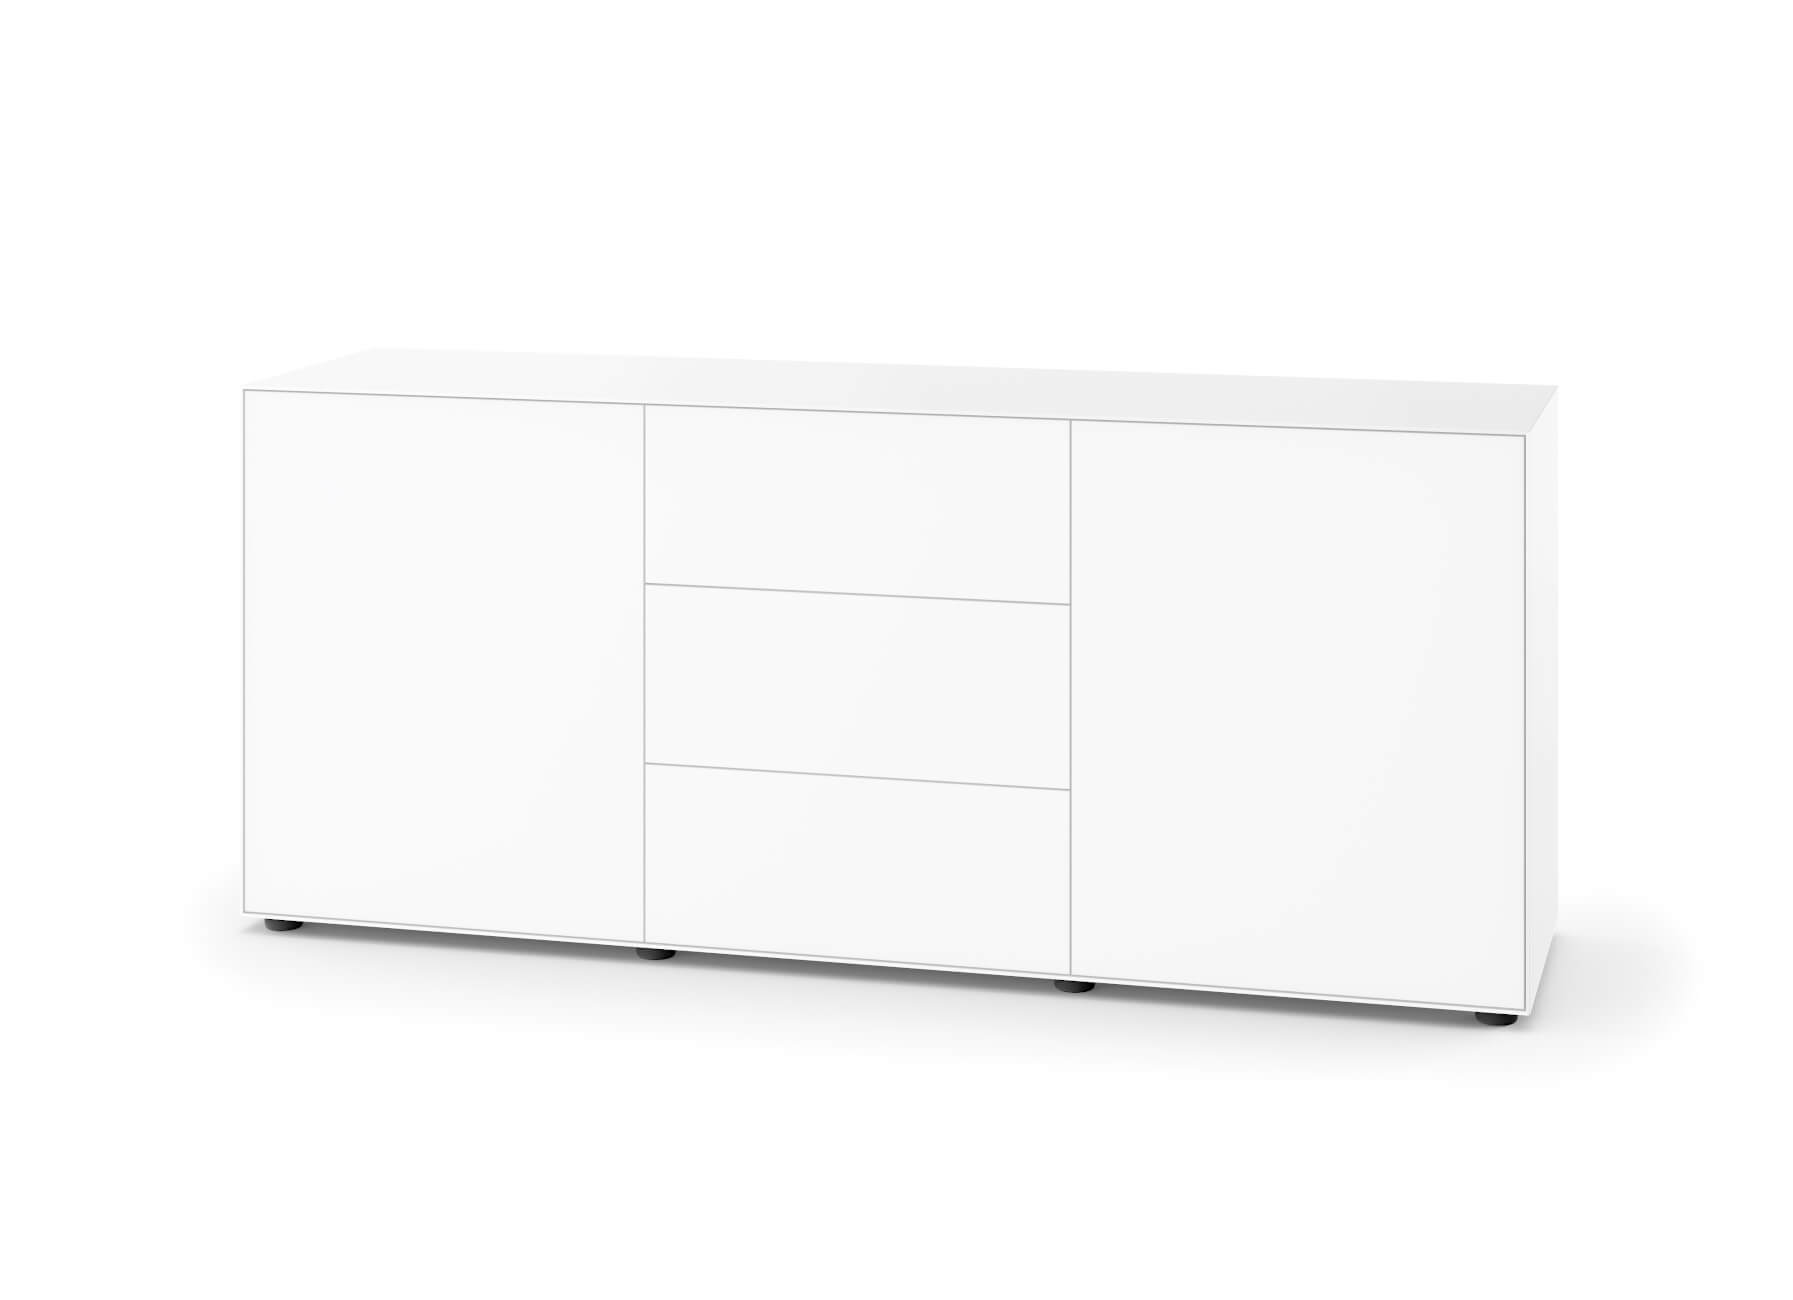 Nex Pur Box 2 x Einzeltür + Schubkasten 3-fach, 75 x 180 cm, weiß